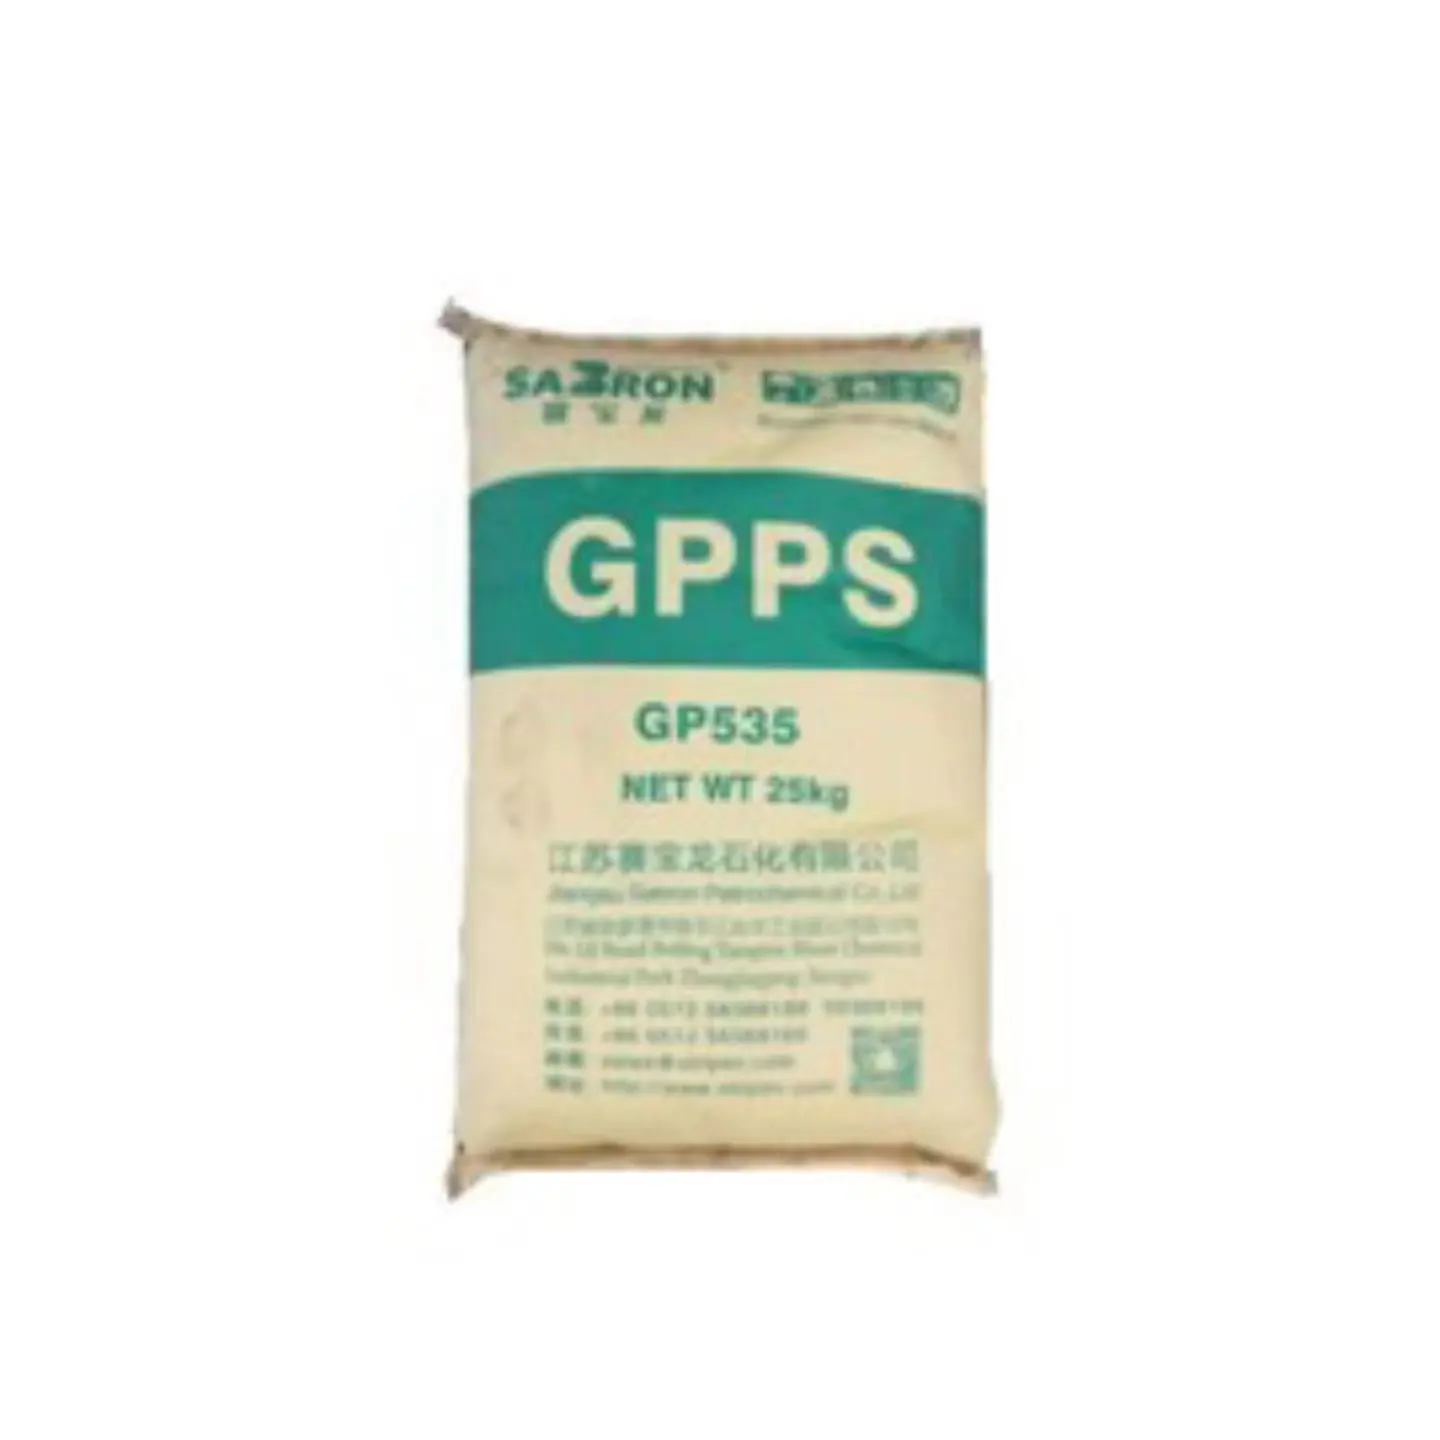 Giá thấp nhất cường độ cao trong suốt sabron GPPS giá Polystyrene Nhựa nguyên liệu gp535f chung đùn lớp